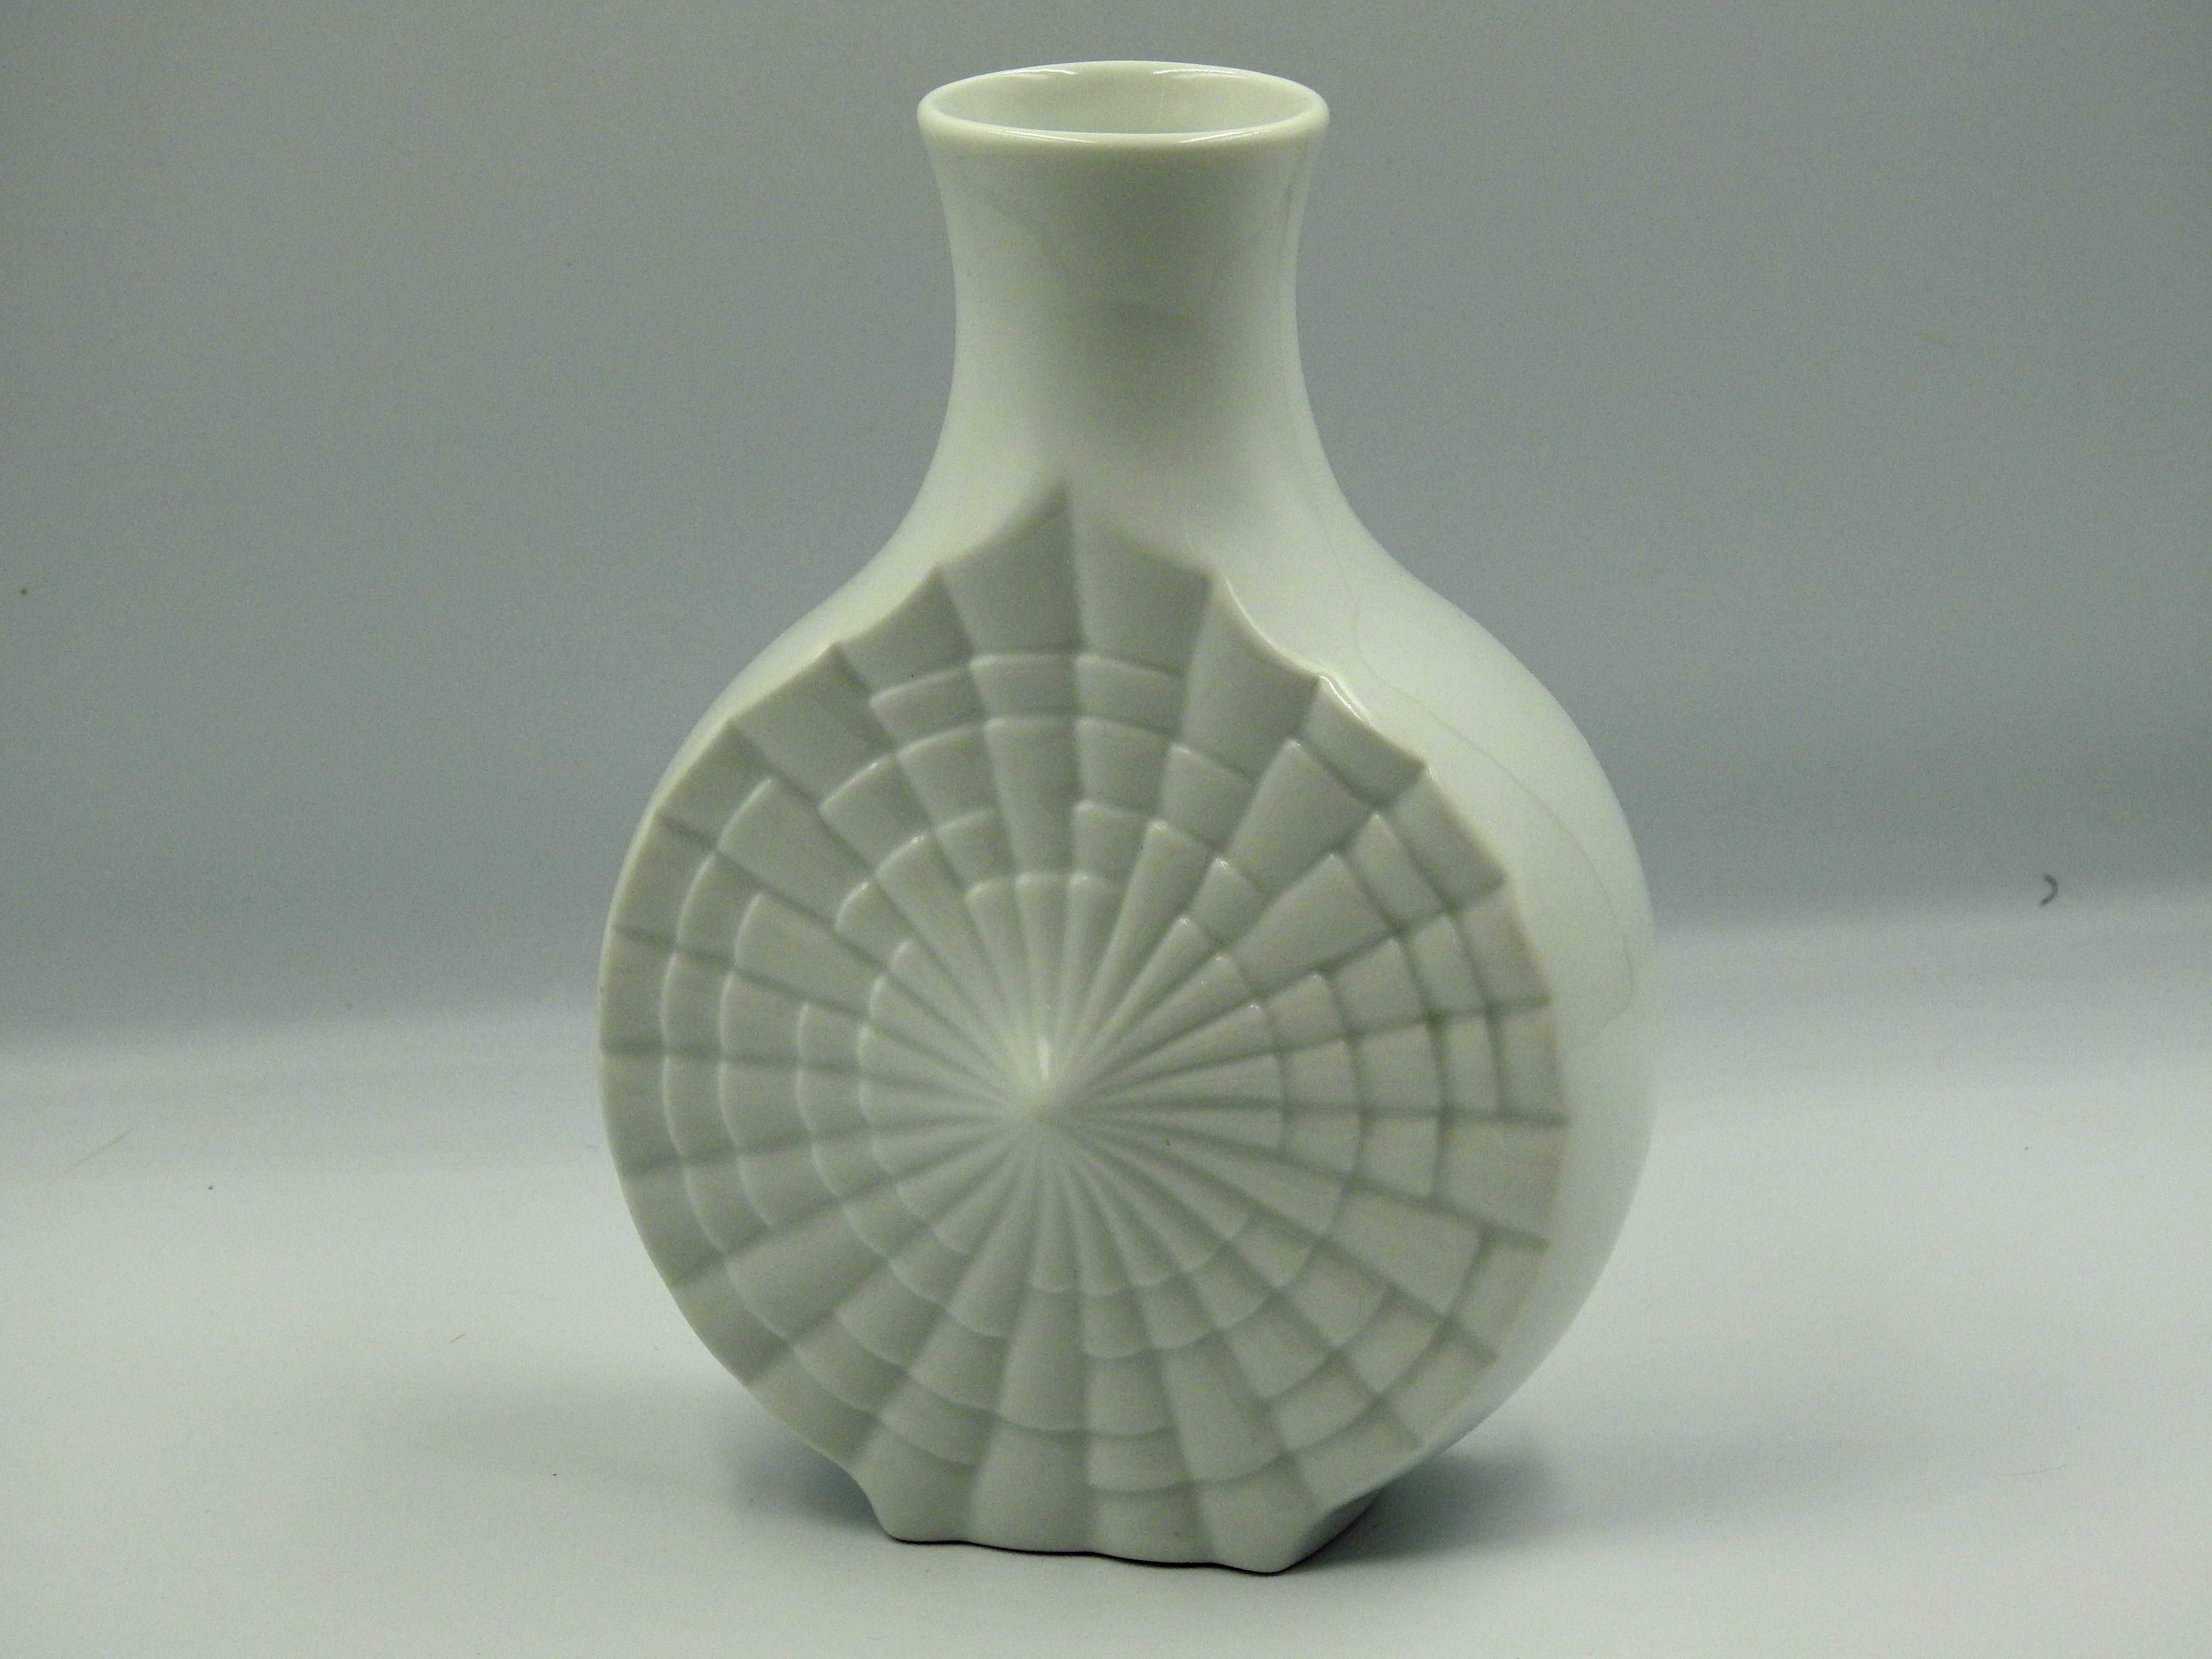 Śliczny biały porcelanowy wazon niemiecki 3D pajęczyna - sygn